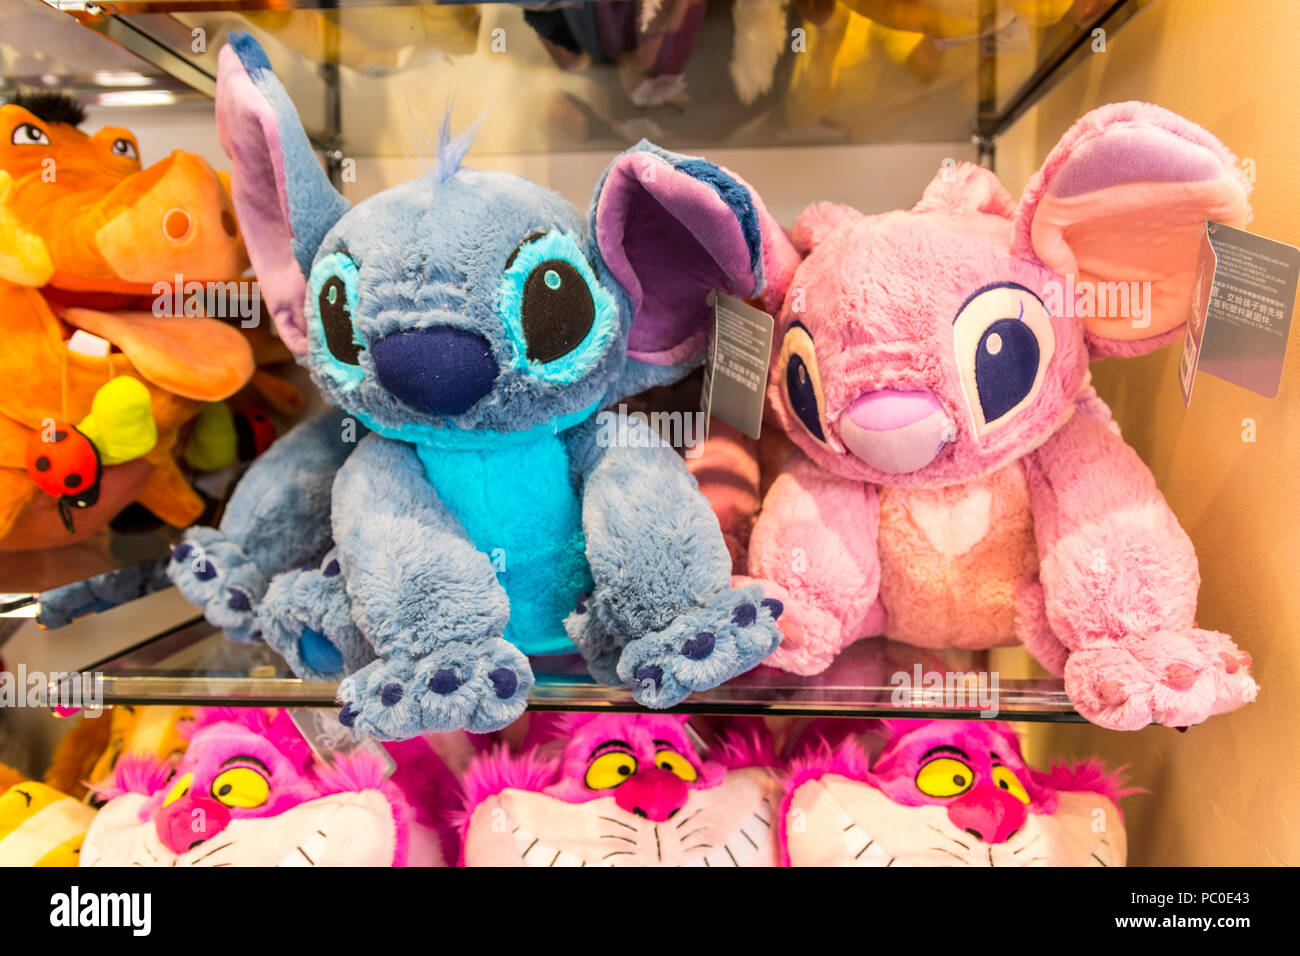 Los niños peluches en exhibición, estante de la tienda de juguetes para niños Fotografía de stock Alamy